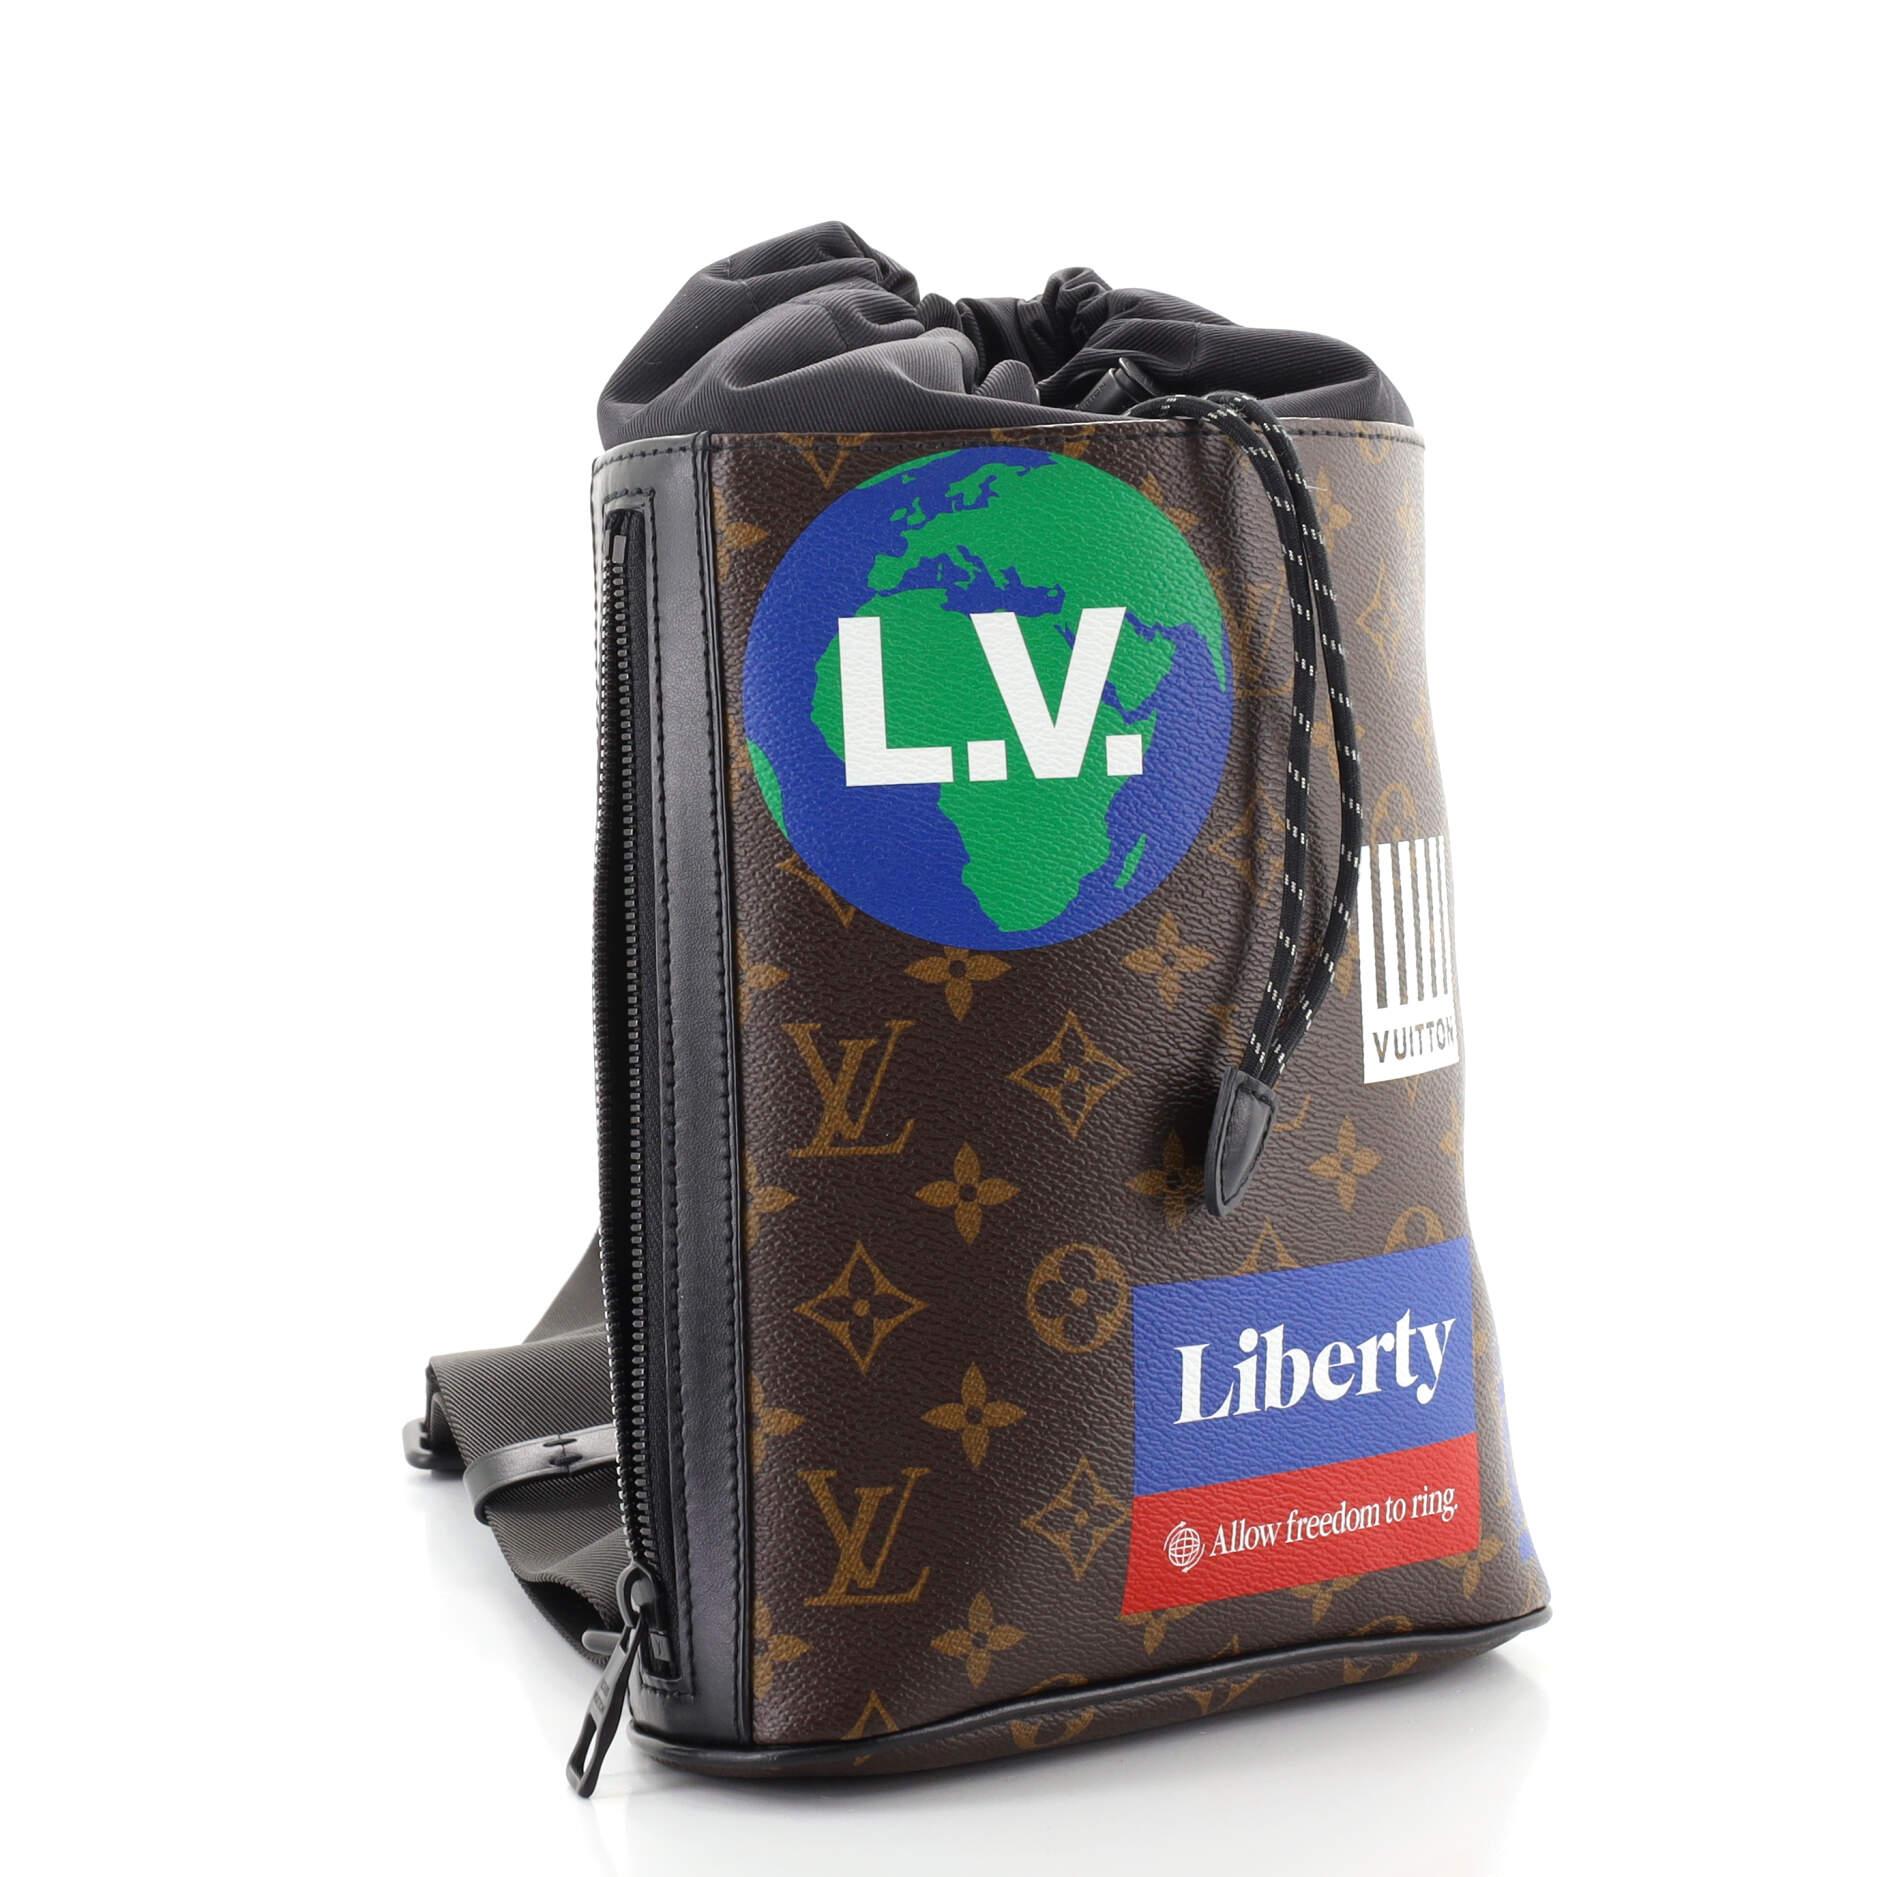 lv limited edition sling bag